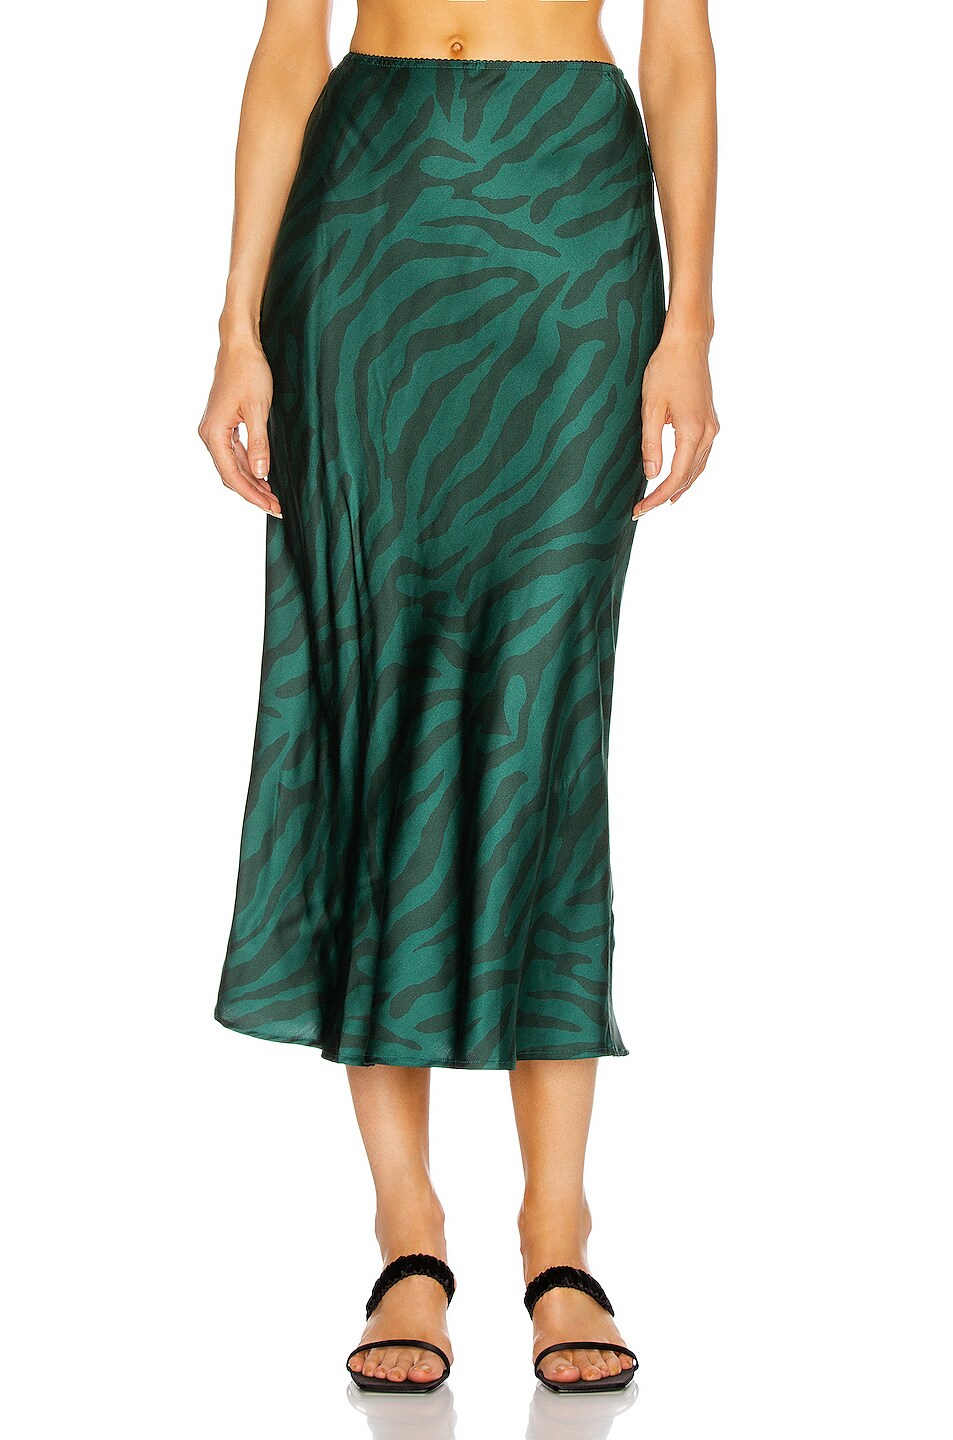 Image 1 of The Andamane Bella Midi Skirt in Green Zebra